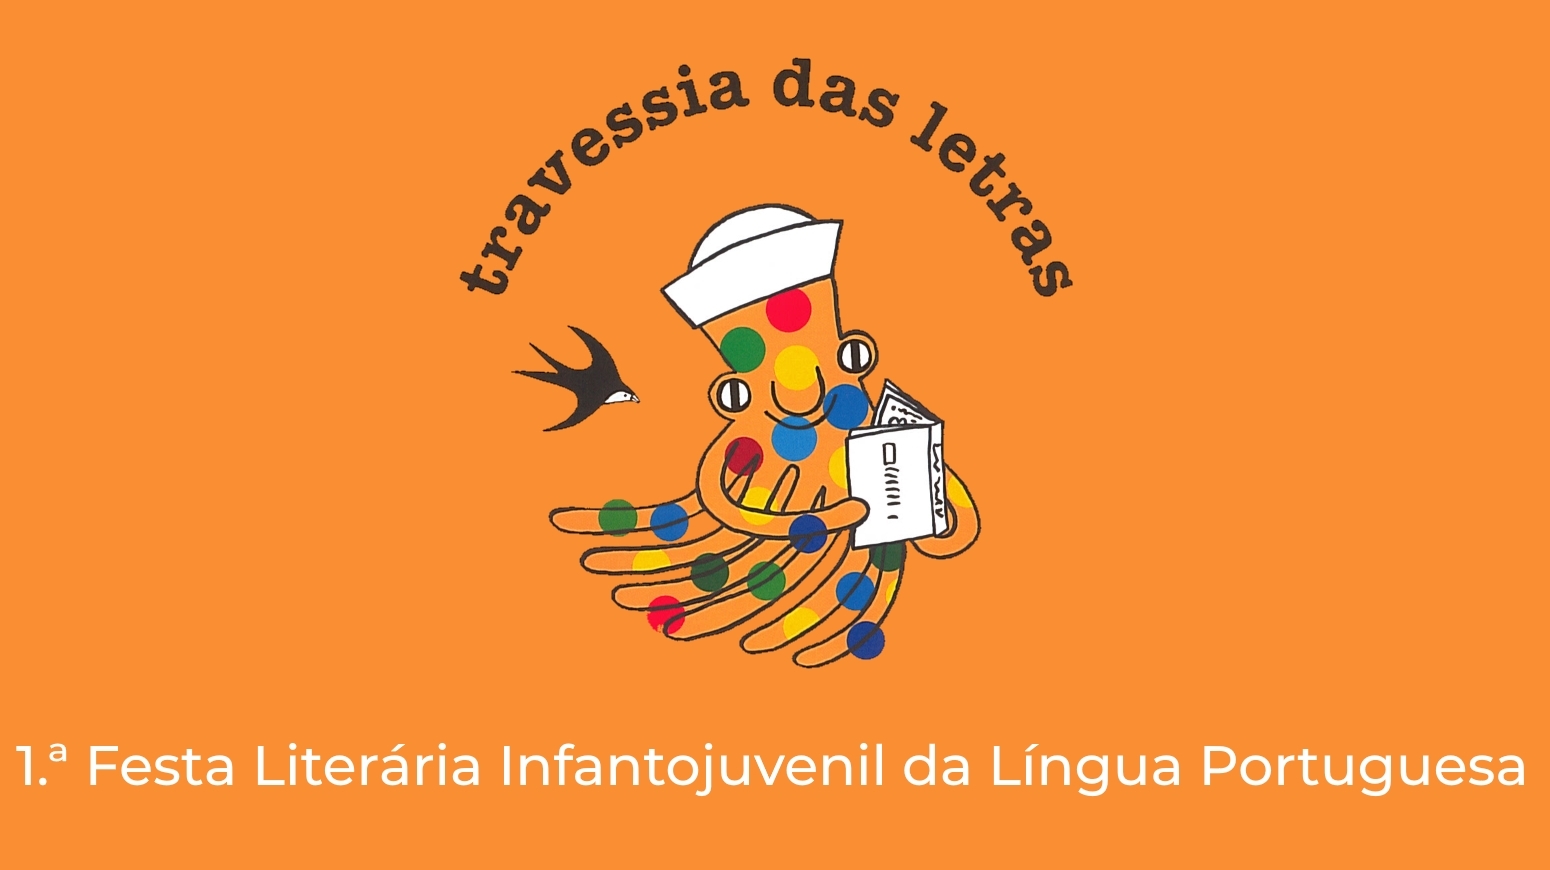 Travessia das Letras - 1.ª Festa literária da língua portuguesa